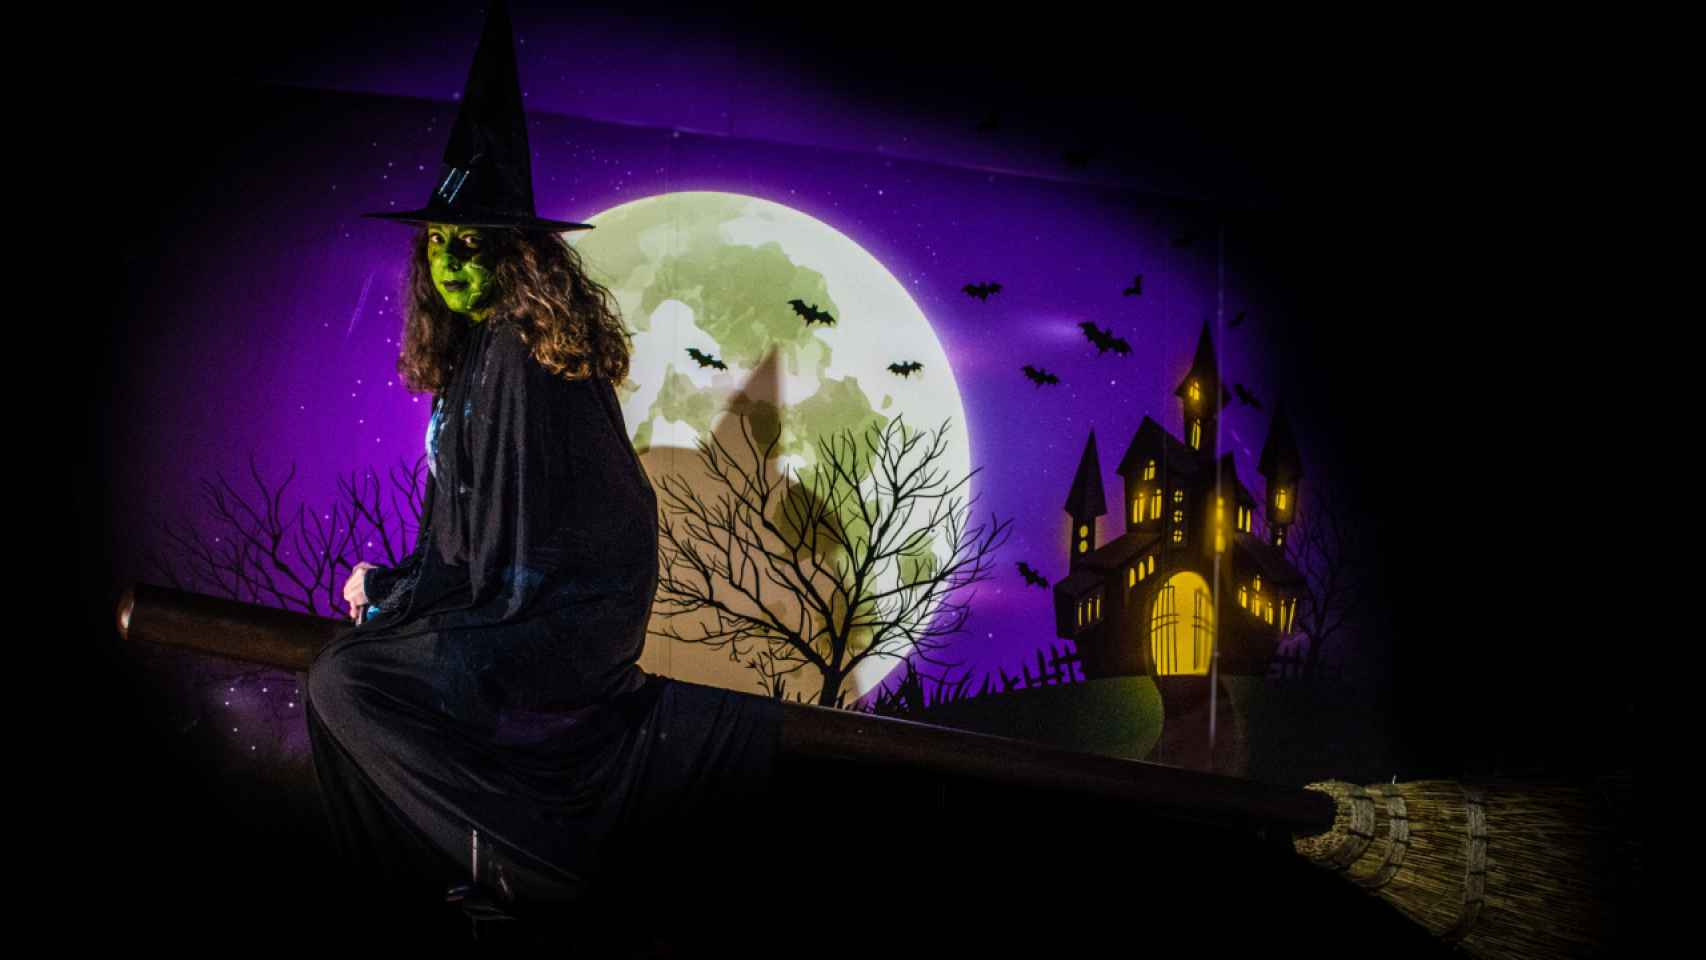 Mundomar en Benidorm se prepara para celebrar la fiesta más espeluznante del año: Halloween